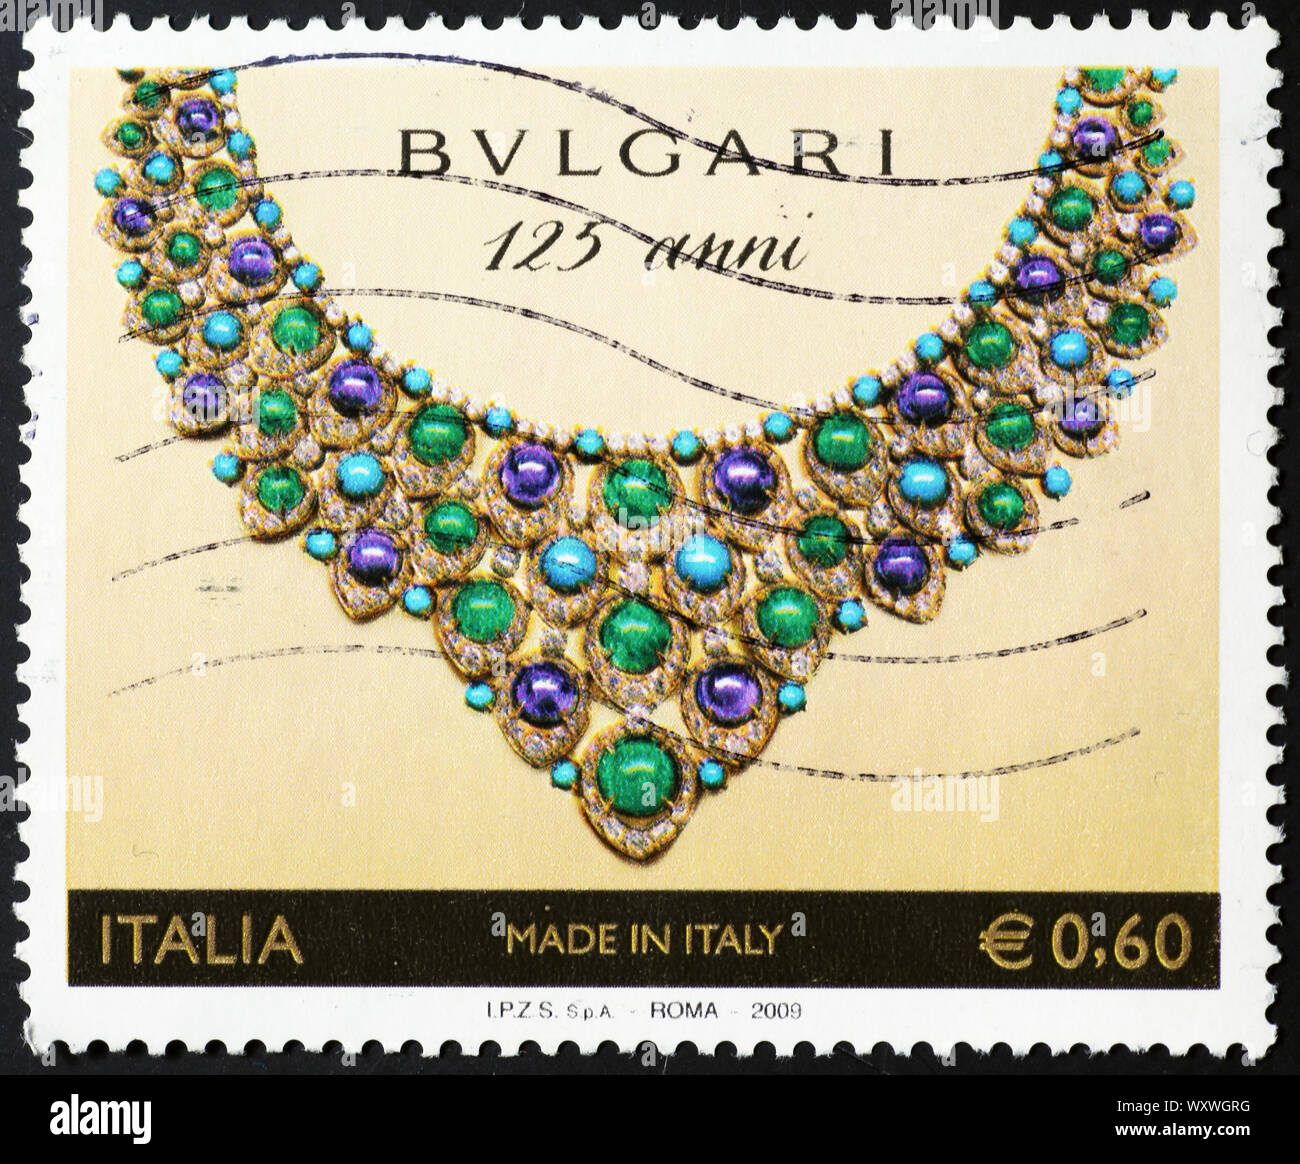 Collana da gioielli Bulgari sul mercato italiano francobollo Foto stock -  Alamy